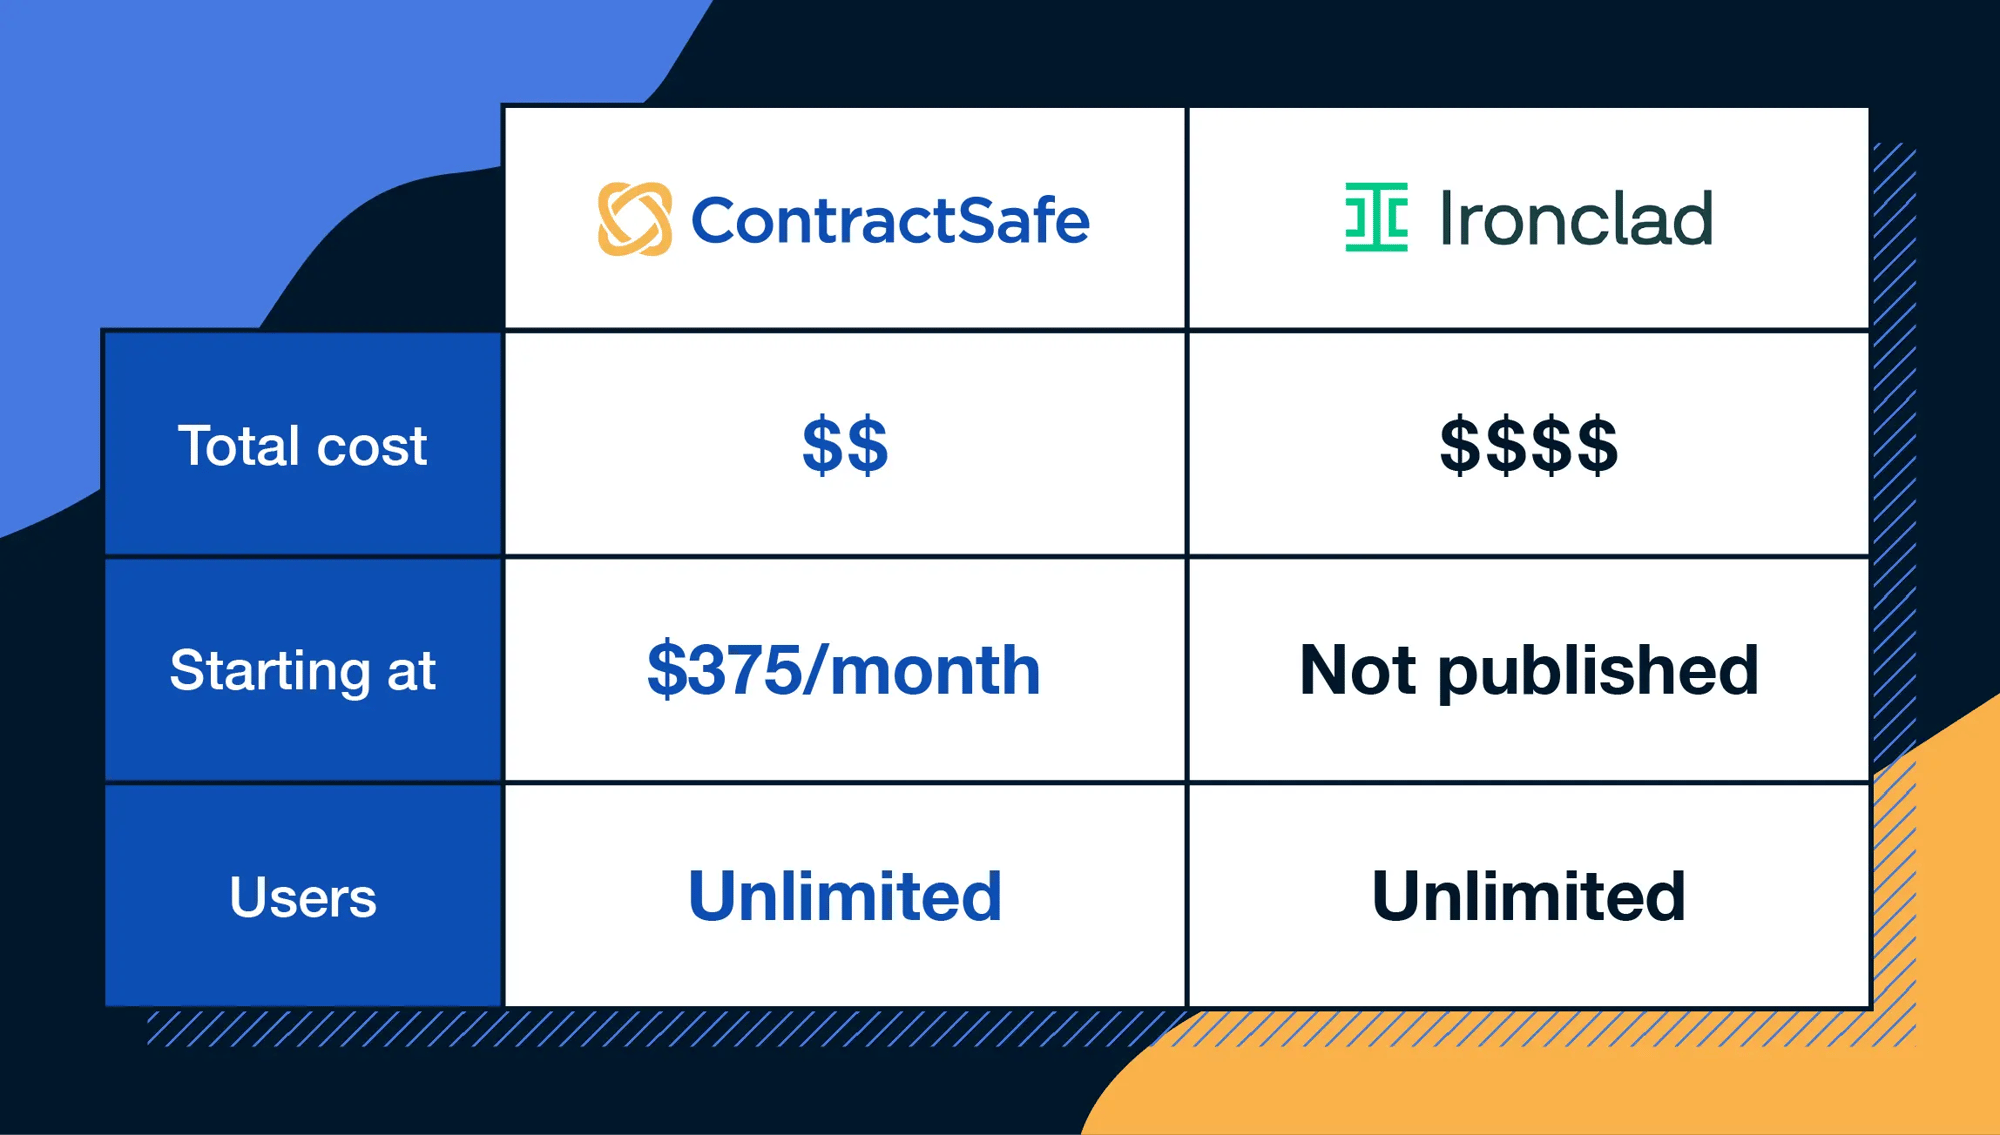 contractsafe-vs-ironclad-cost-comparison-2